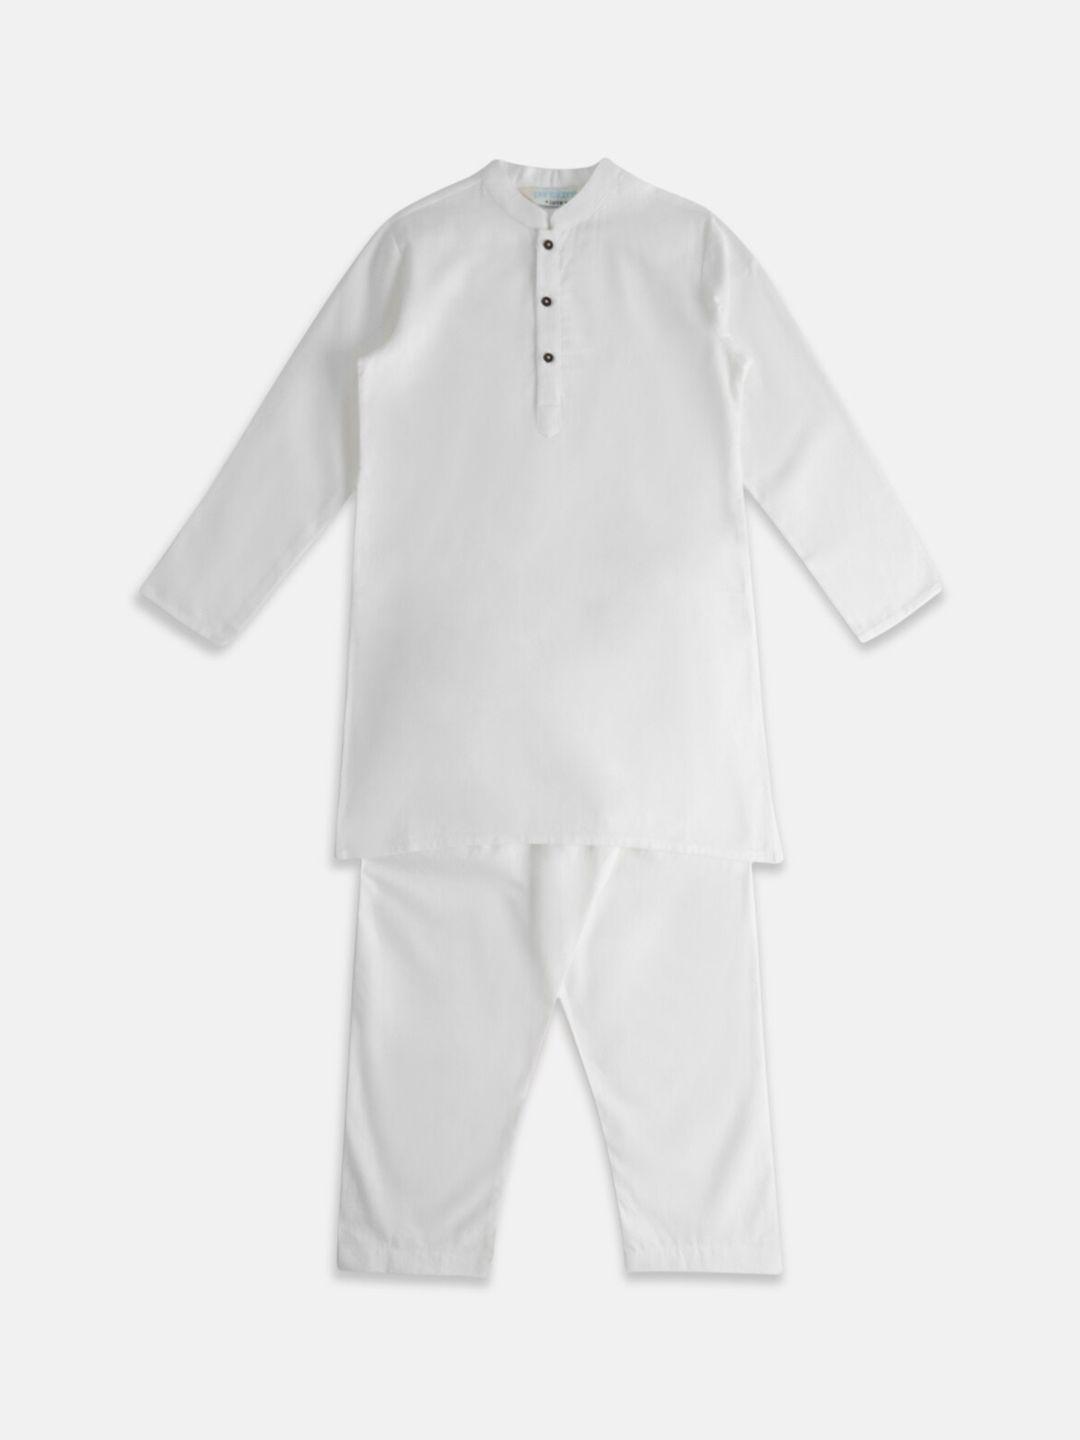 indus route by pantaloons boys pure cotton kurta with pyjamas